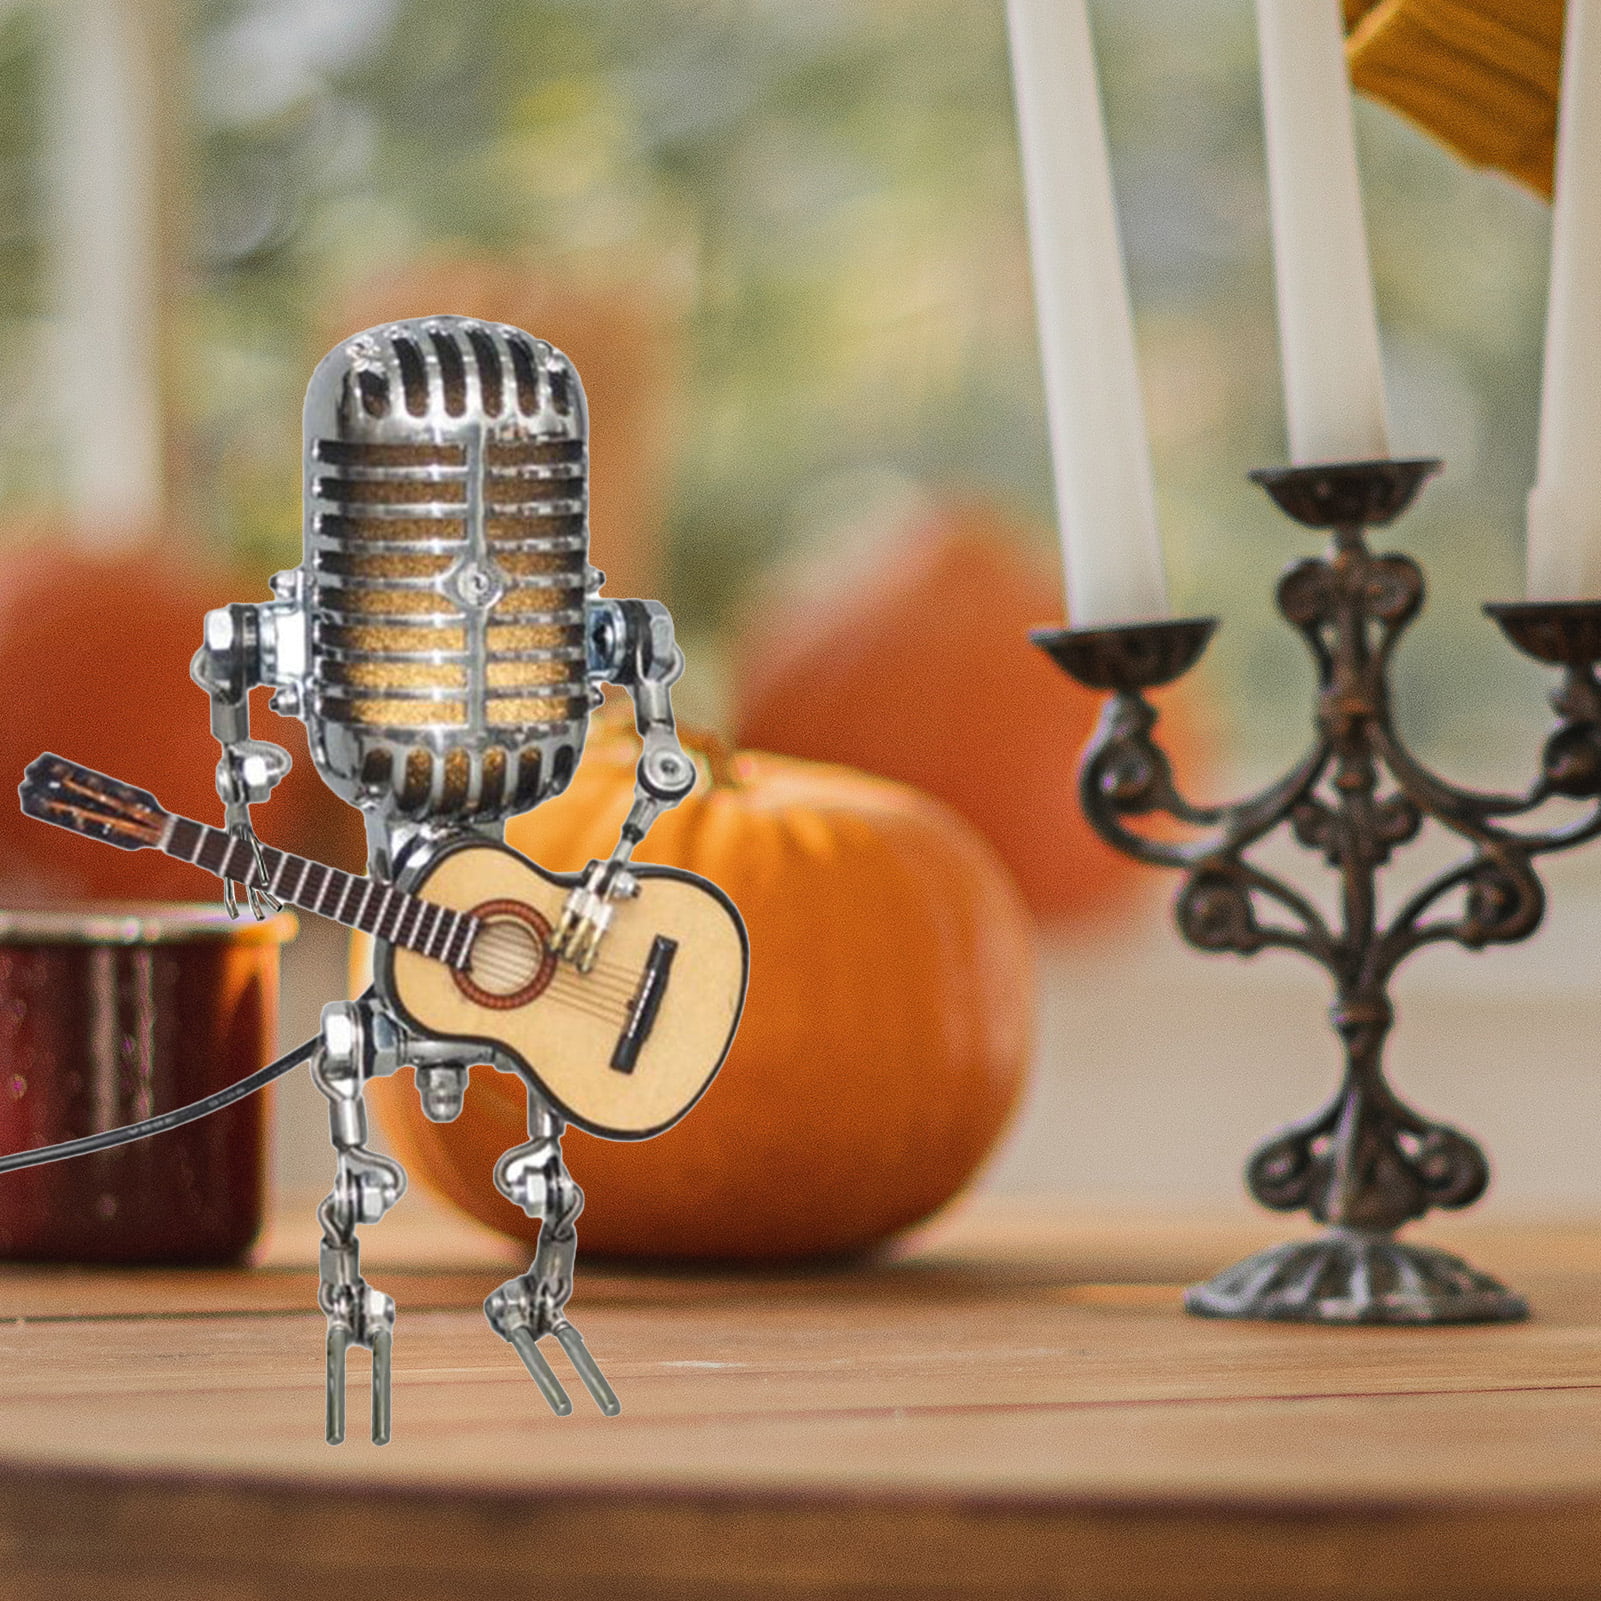 Acheter Lampe Robot rétro mode Microphone tête fête maison fer guitare  jouant décoration Robot Figurine jouet